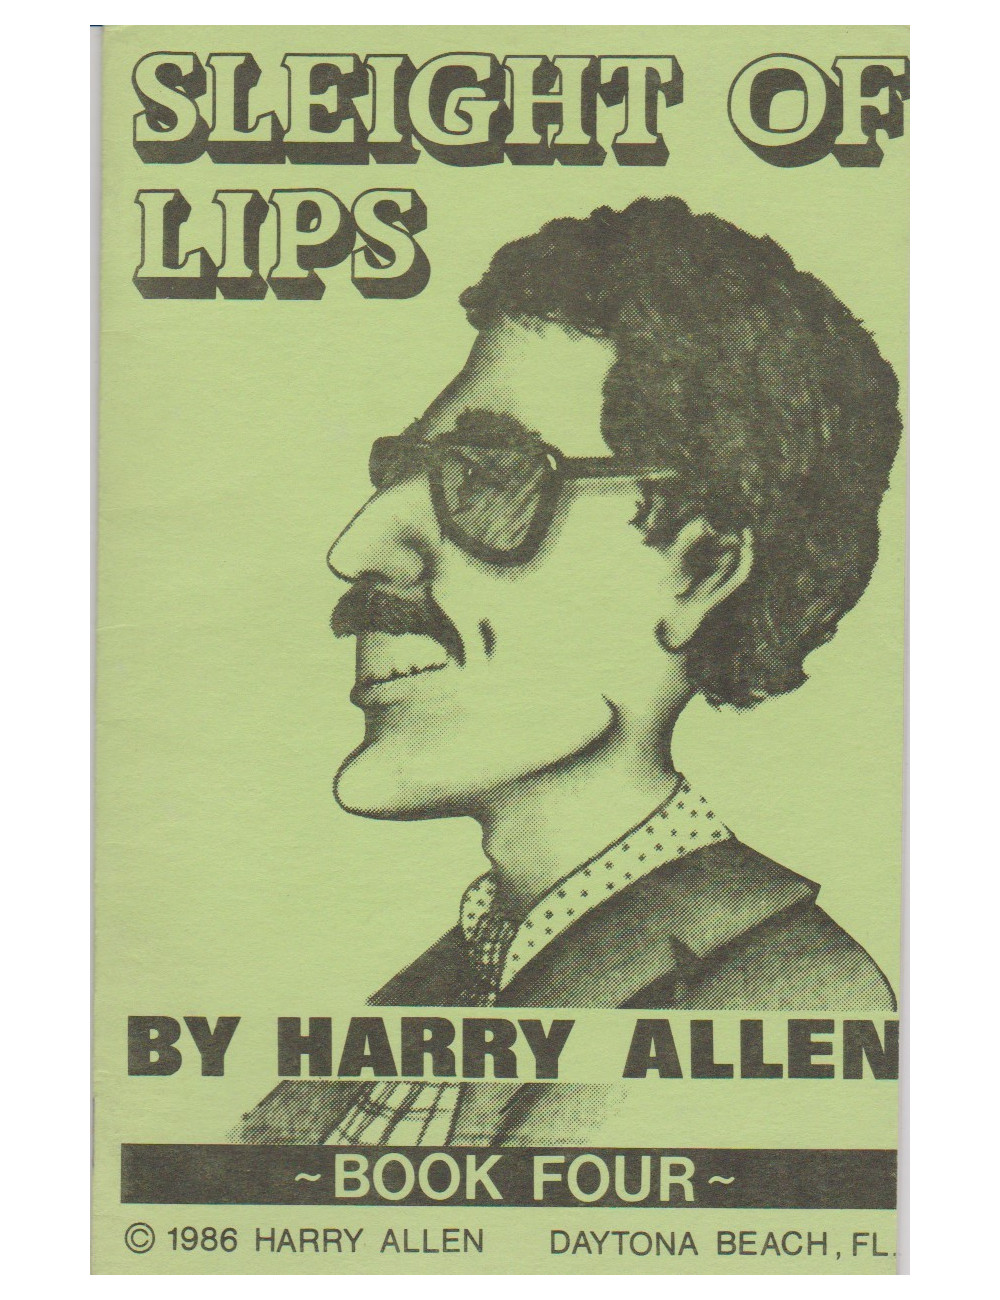 SLEIGHT OF LIPS (HARRY ALLEN)